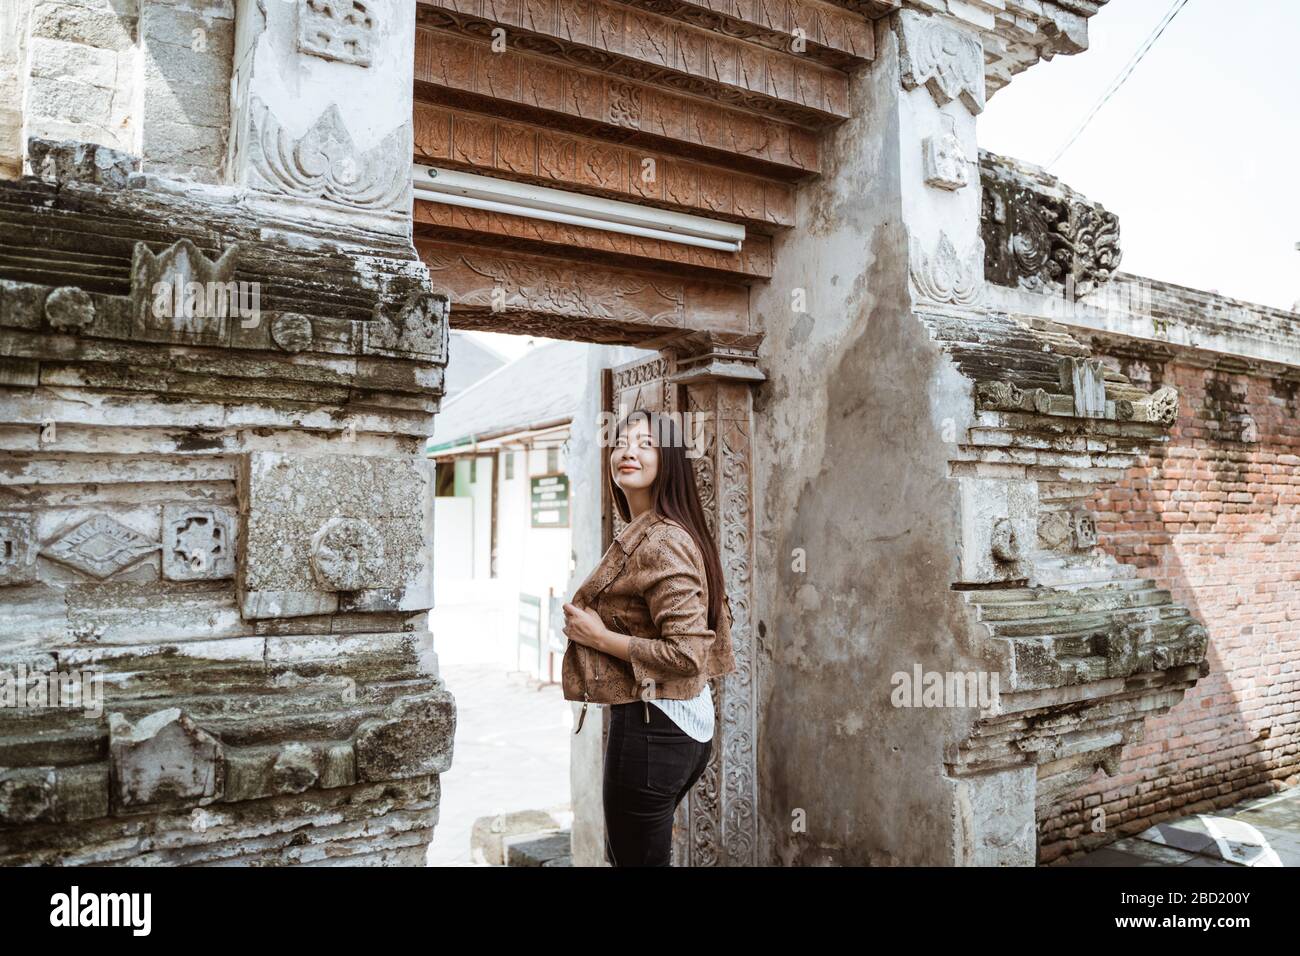 une femme asiatique qui aime voyager dans un endroit culturel exotique Banque D'Images